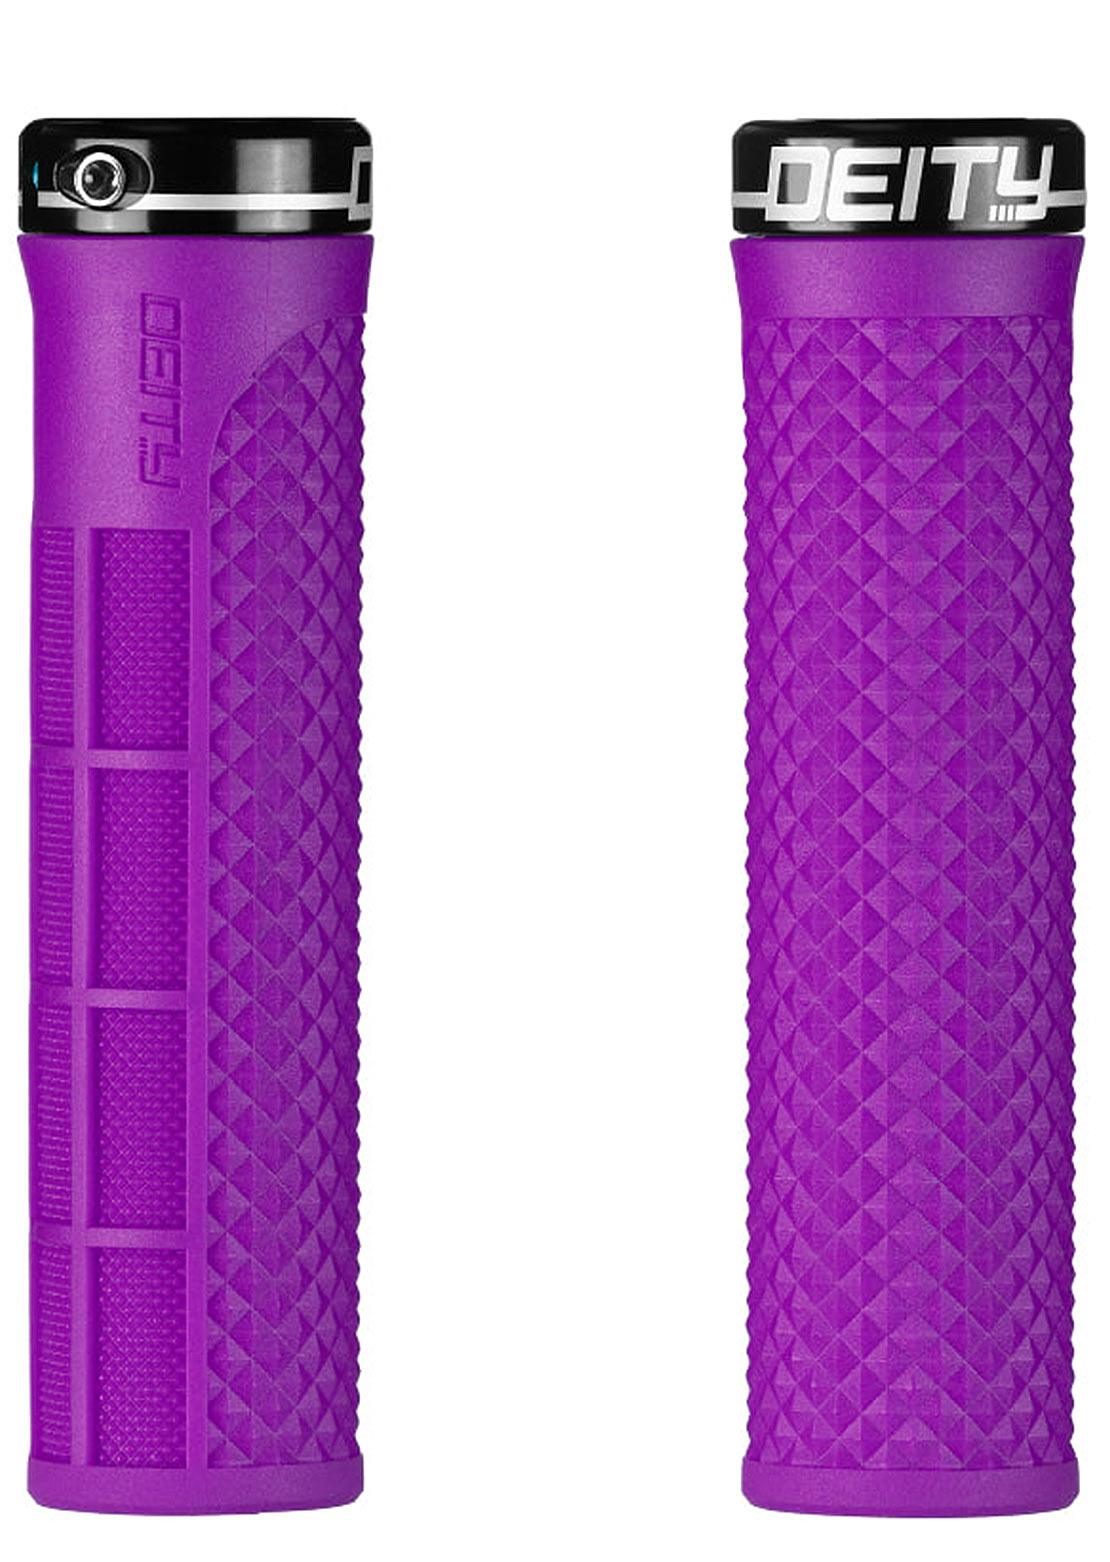 Deity LockJaw Grips - 132mm Purple